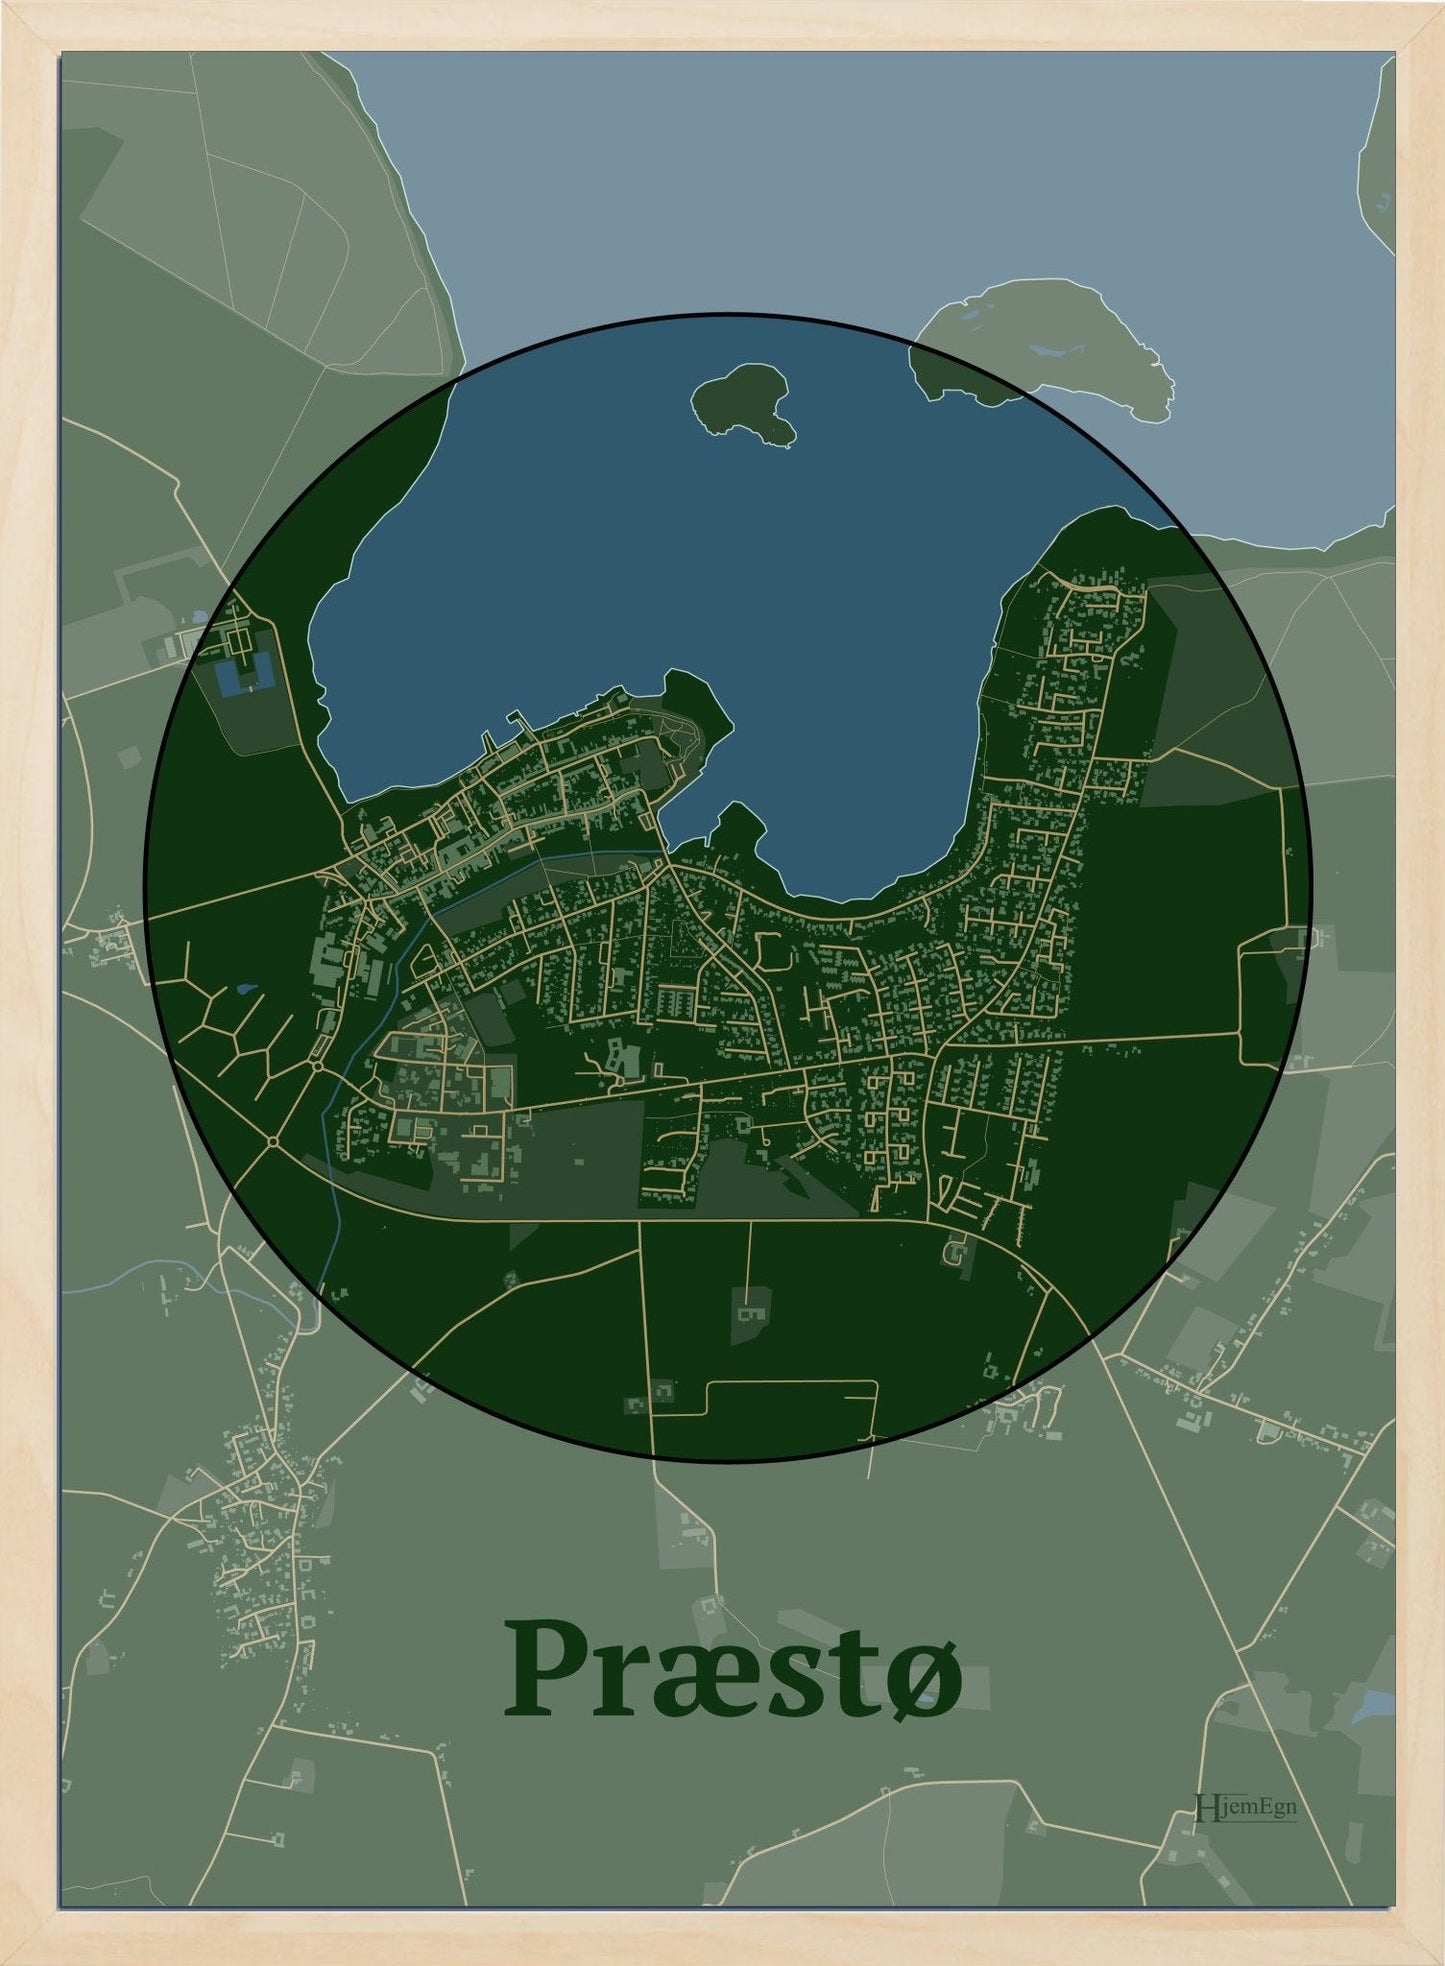 Præstø plakat i farve mørk grøn og HjemEgn.dk design centrum. Design bykort for Præstø